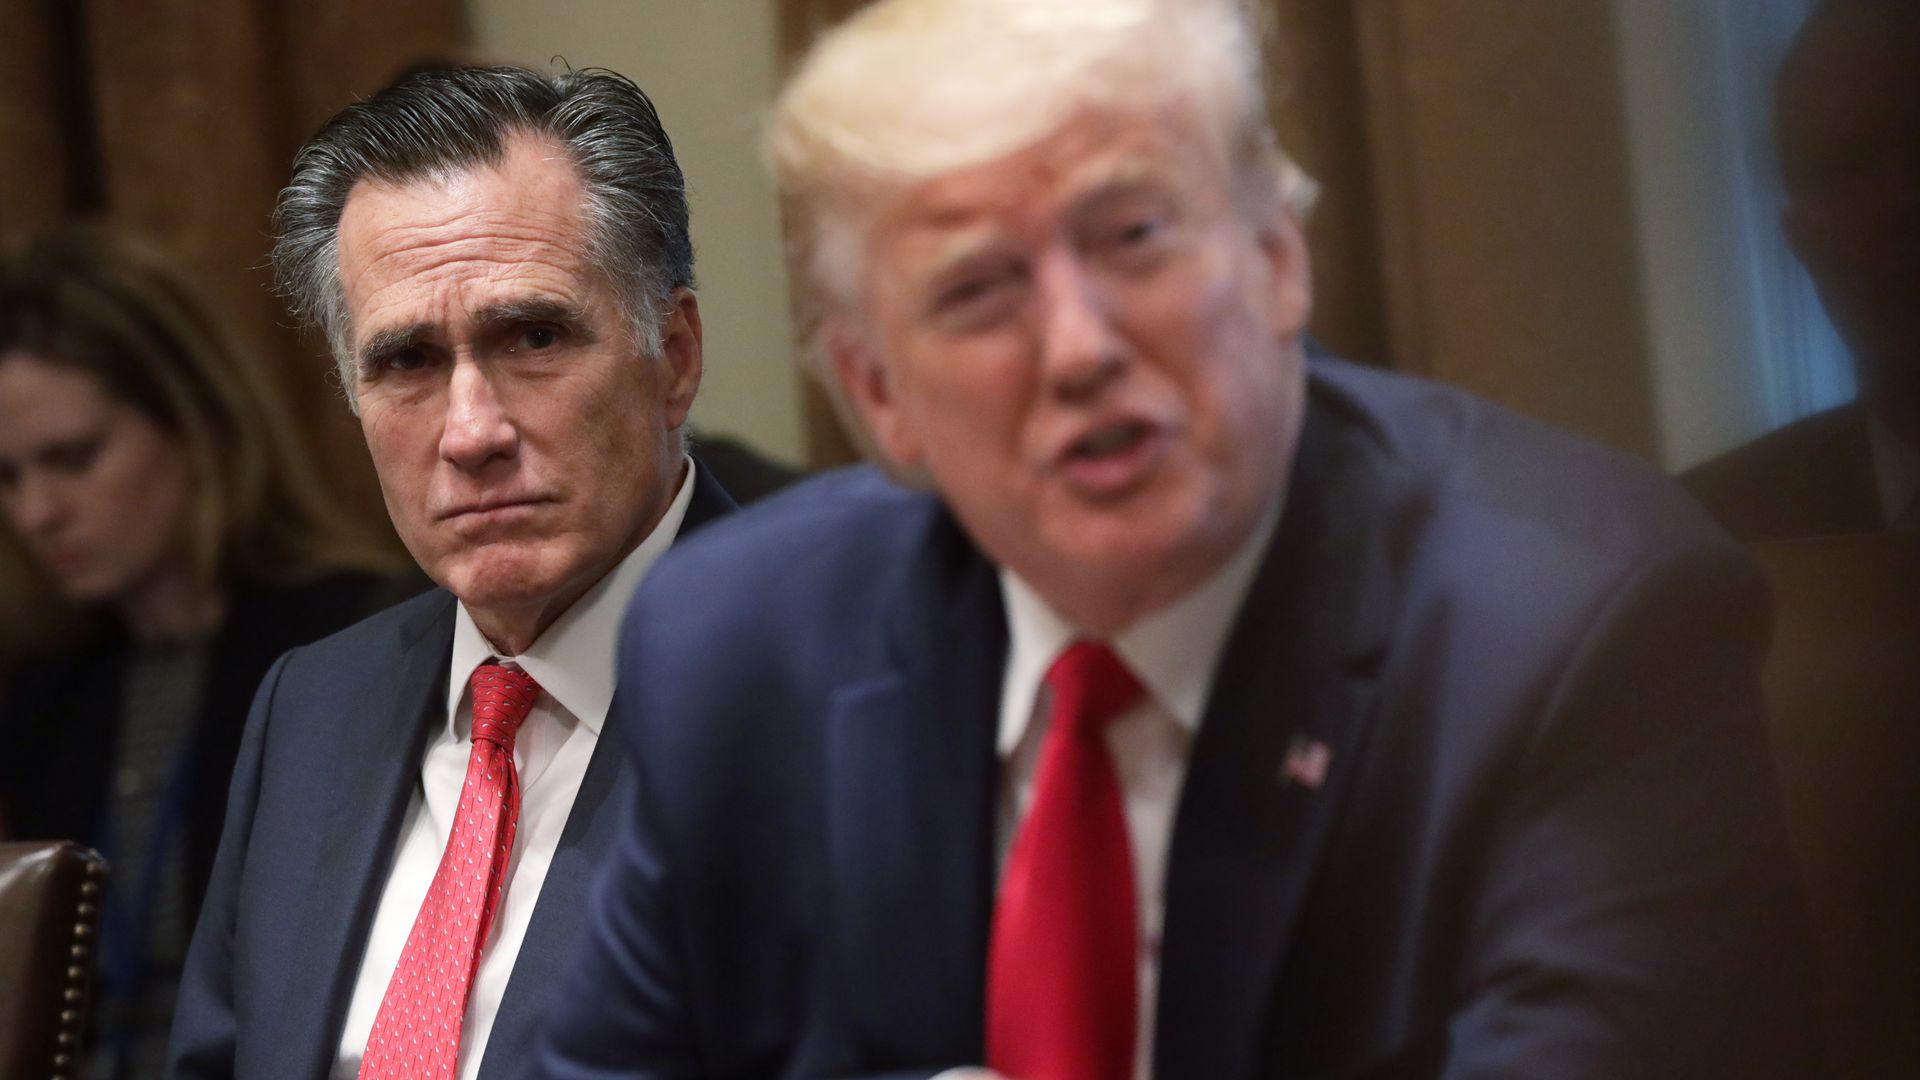 Mitt Romney sitting behind Trump